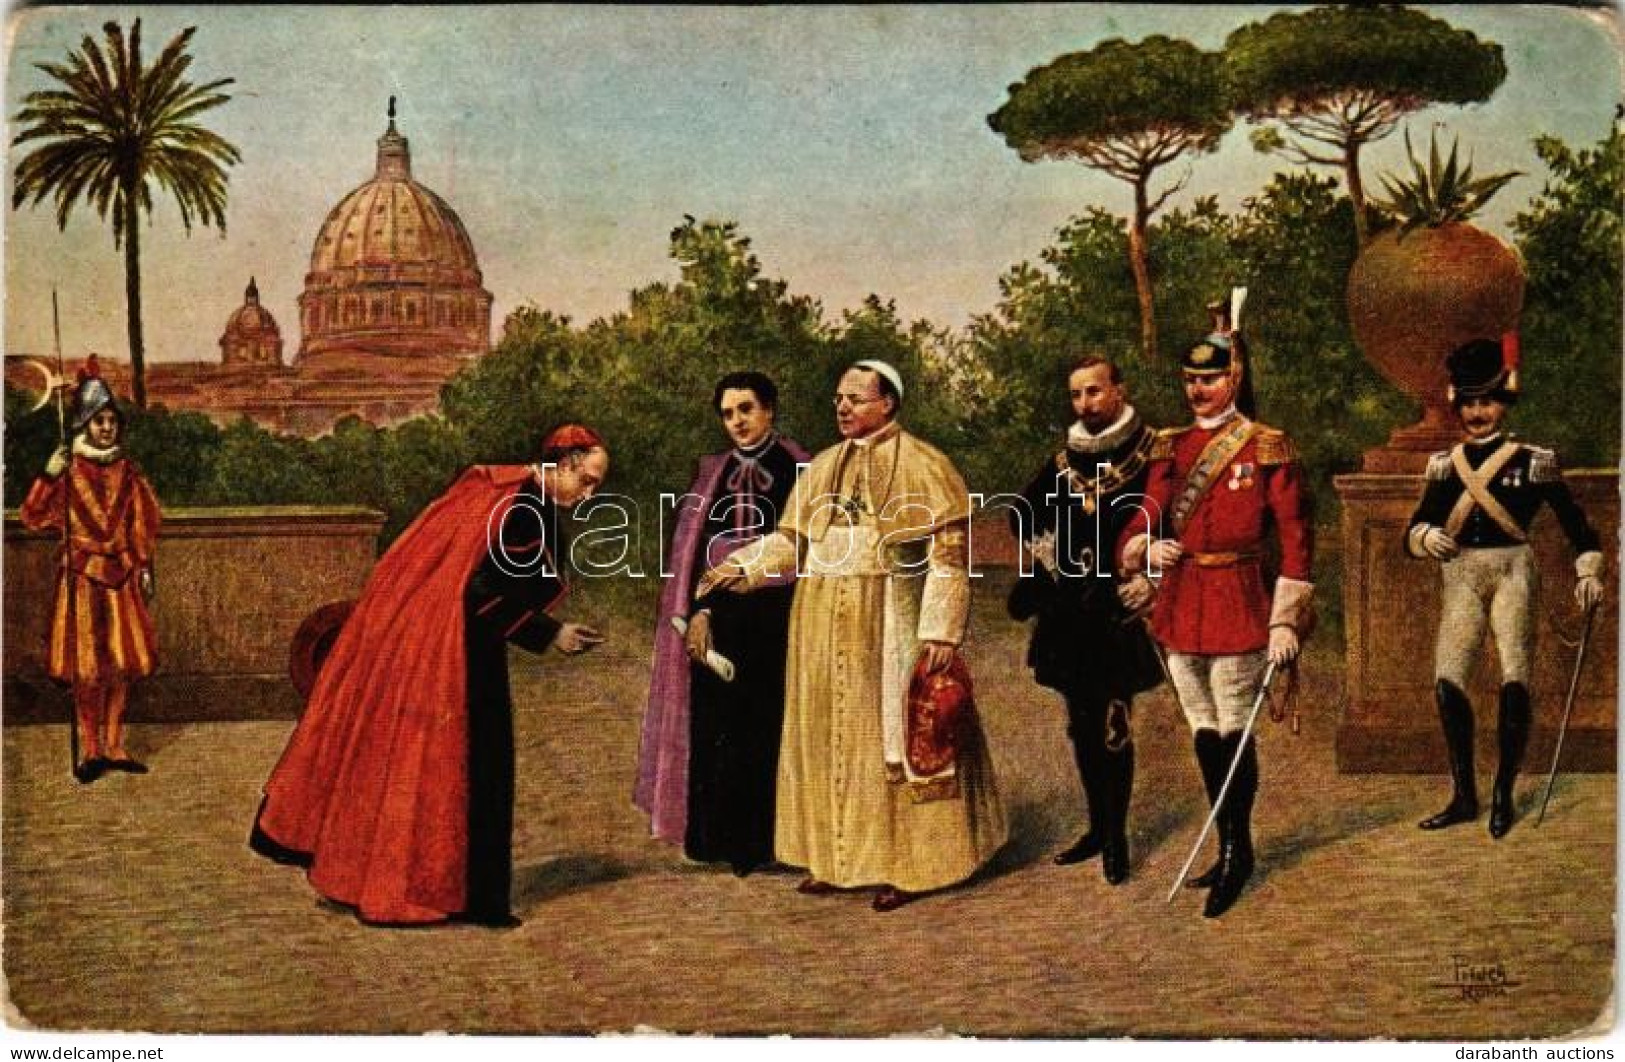 ** T2/T3 S. S. Pio XI E La Sua Corte Nei Giardini Vaticani / Pope Pius XI And His Court In The Vatican Gardens (EK) - Ohne Zuordnung